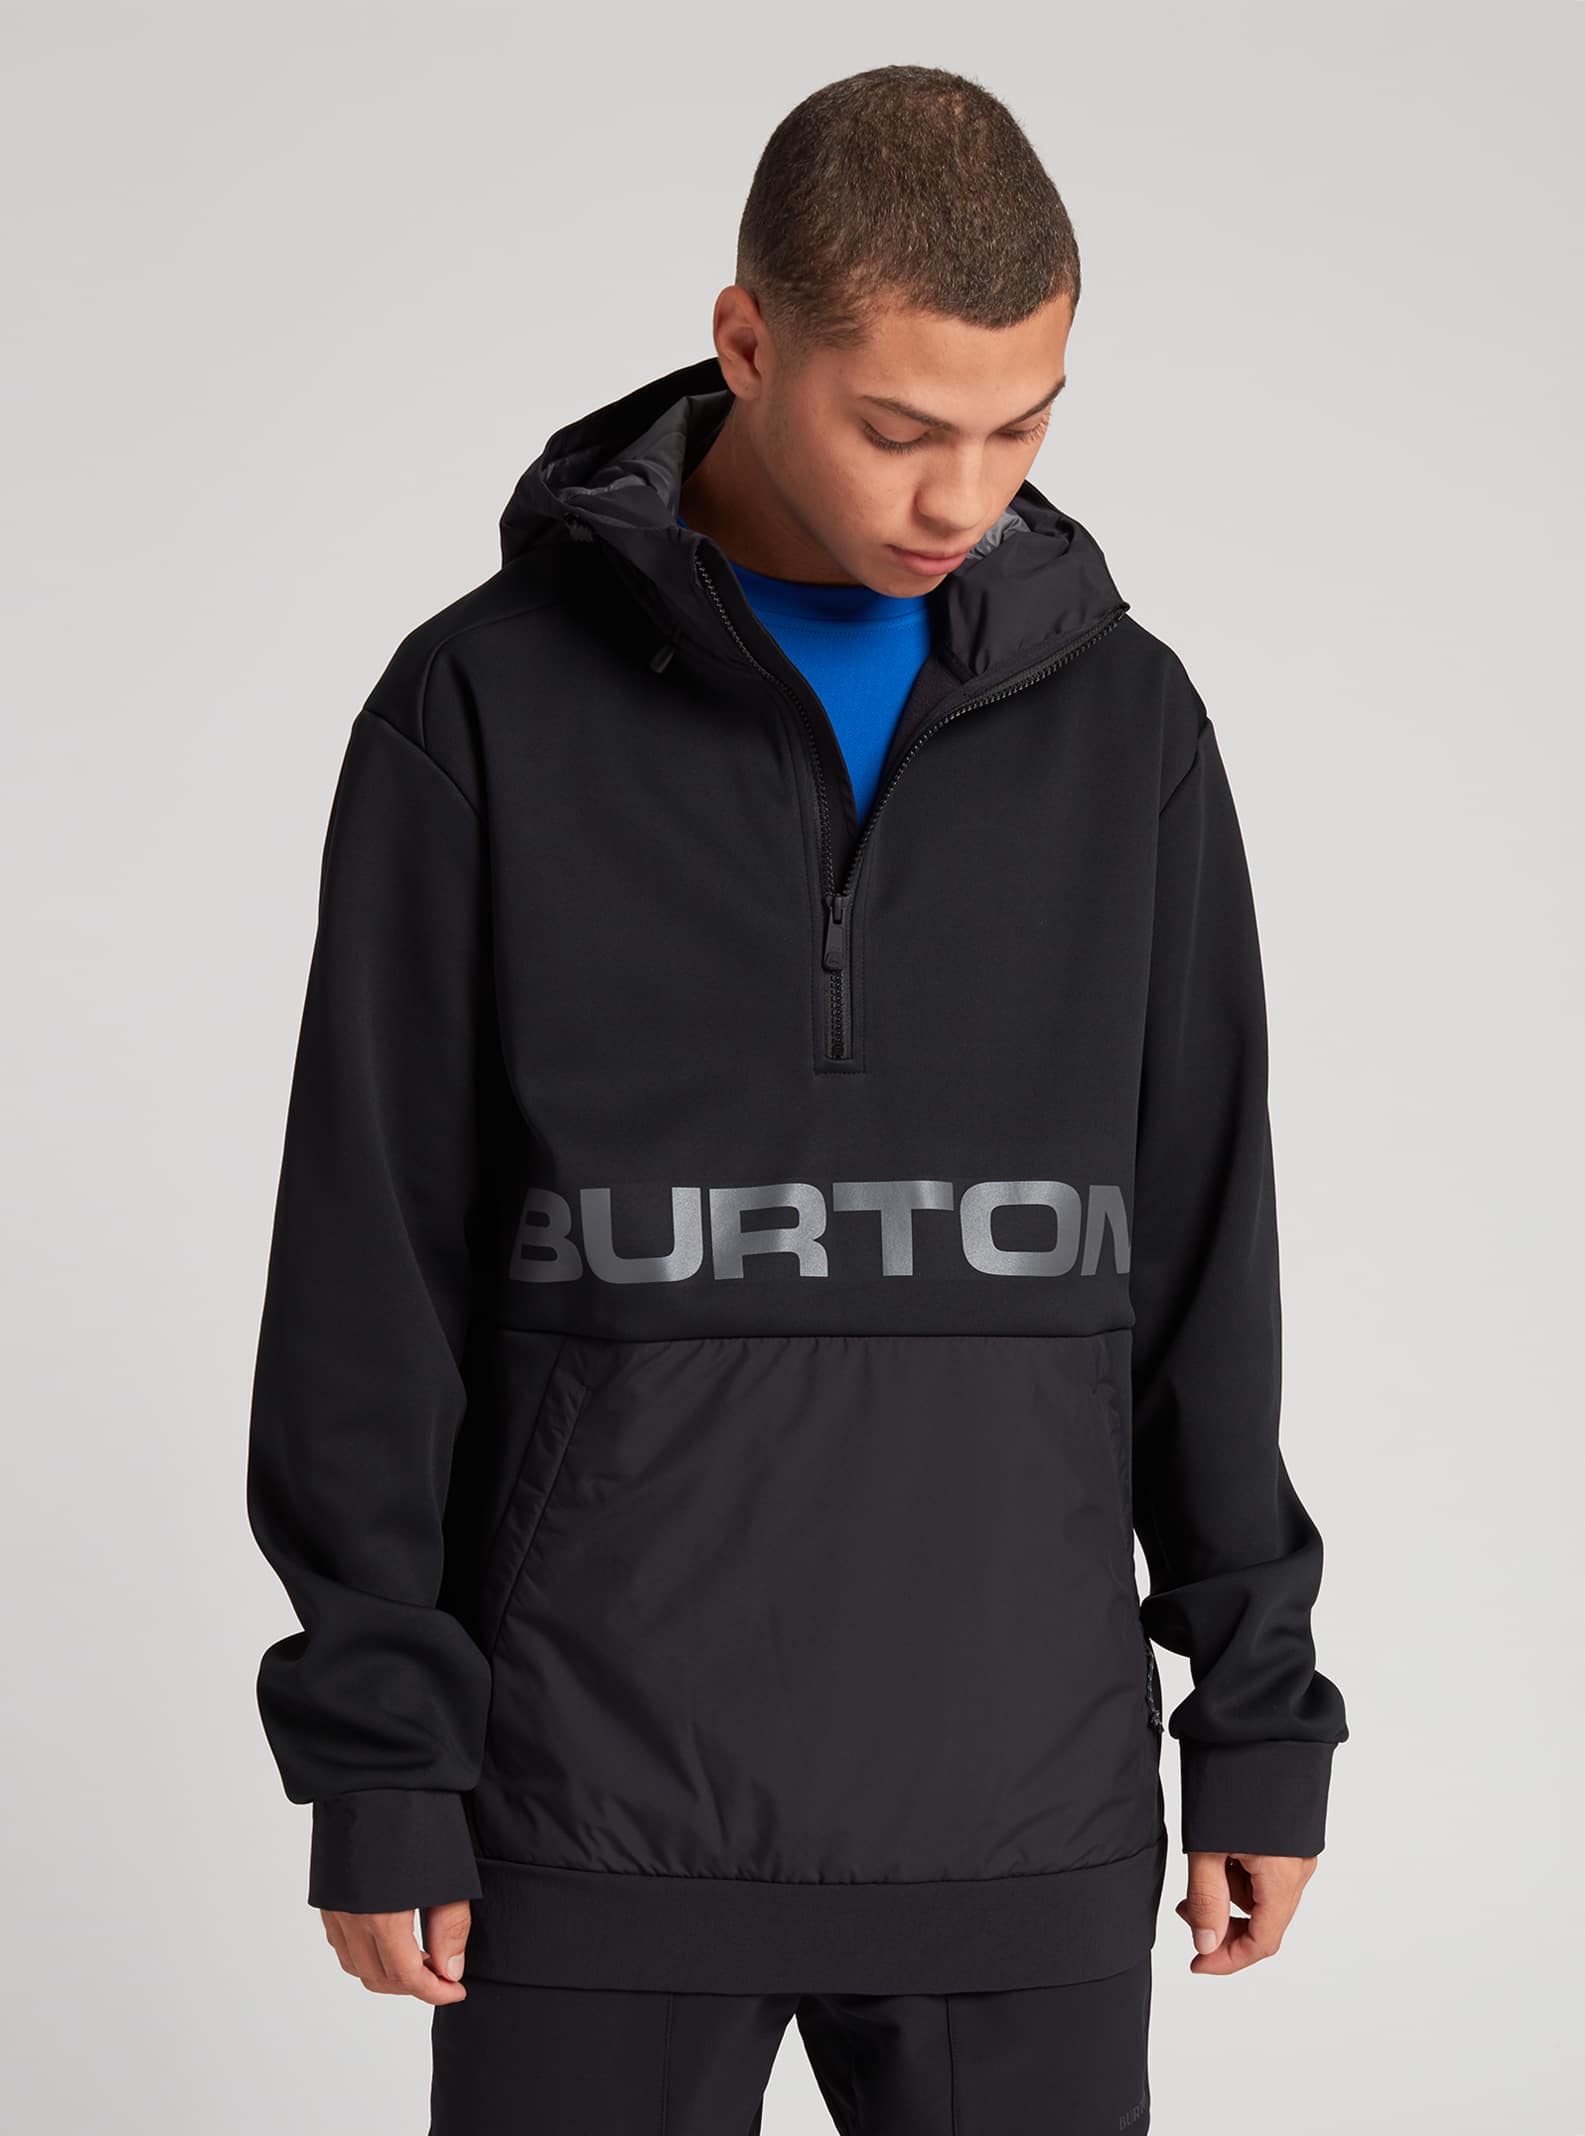 Men's Burton Crown Weatherproof Performance Fleece Pullover